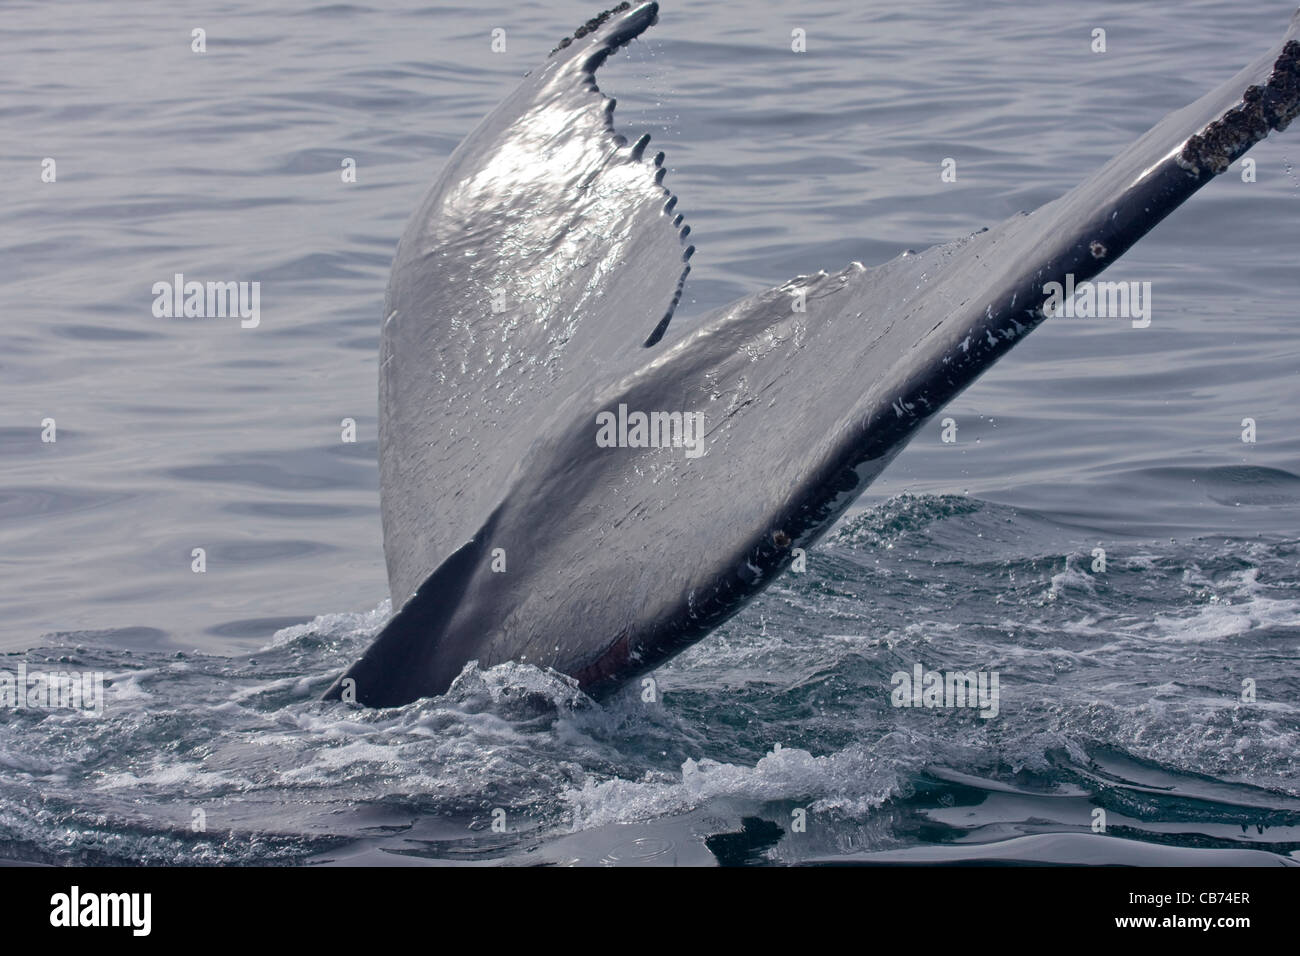 Fluke of a Humpback Whale / Megaptera novaeangliae Stock Photo